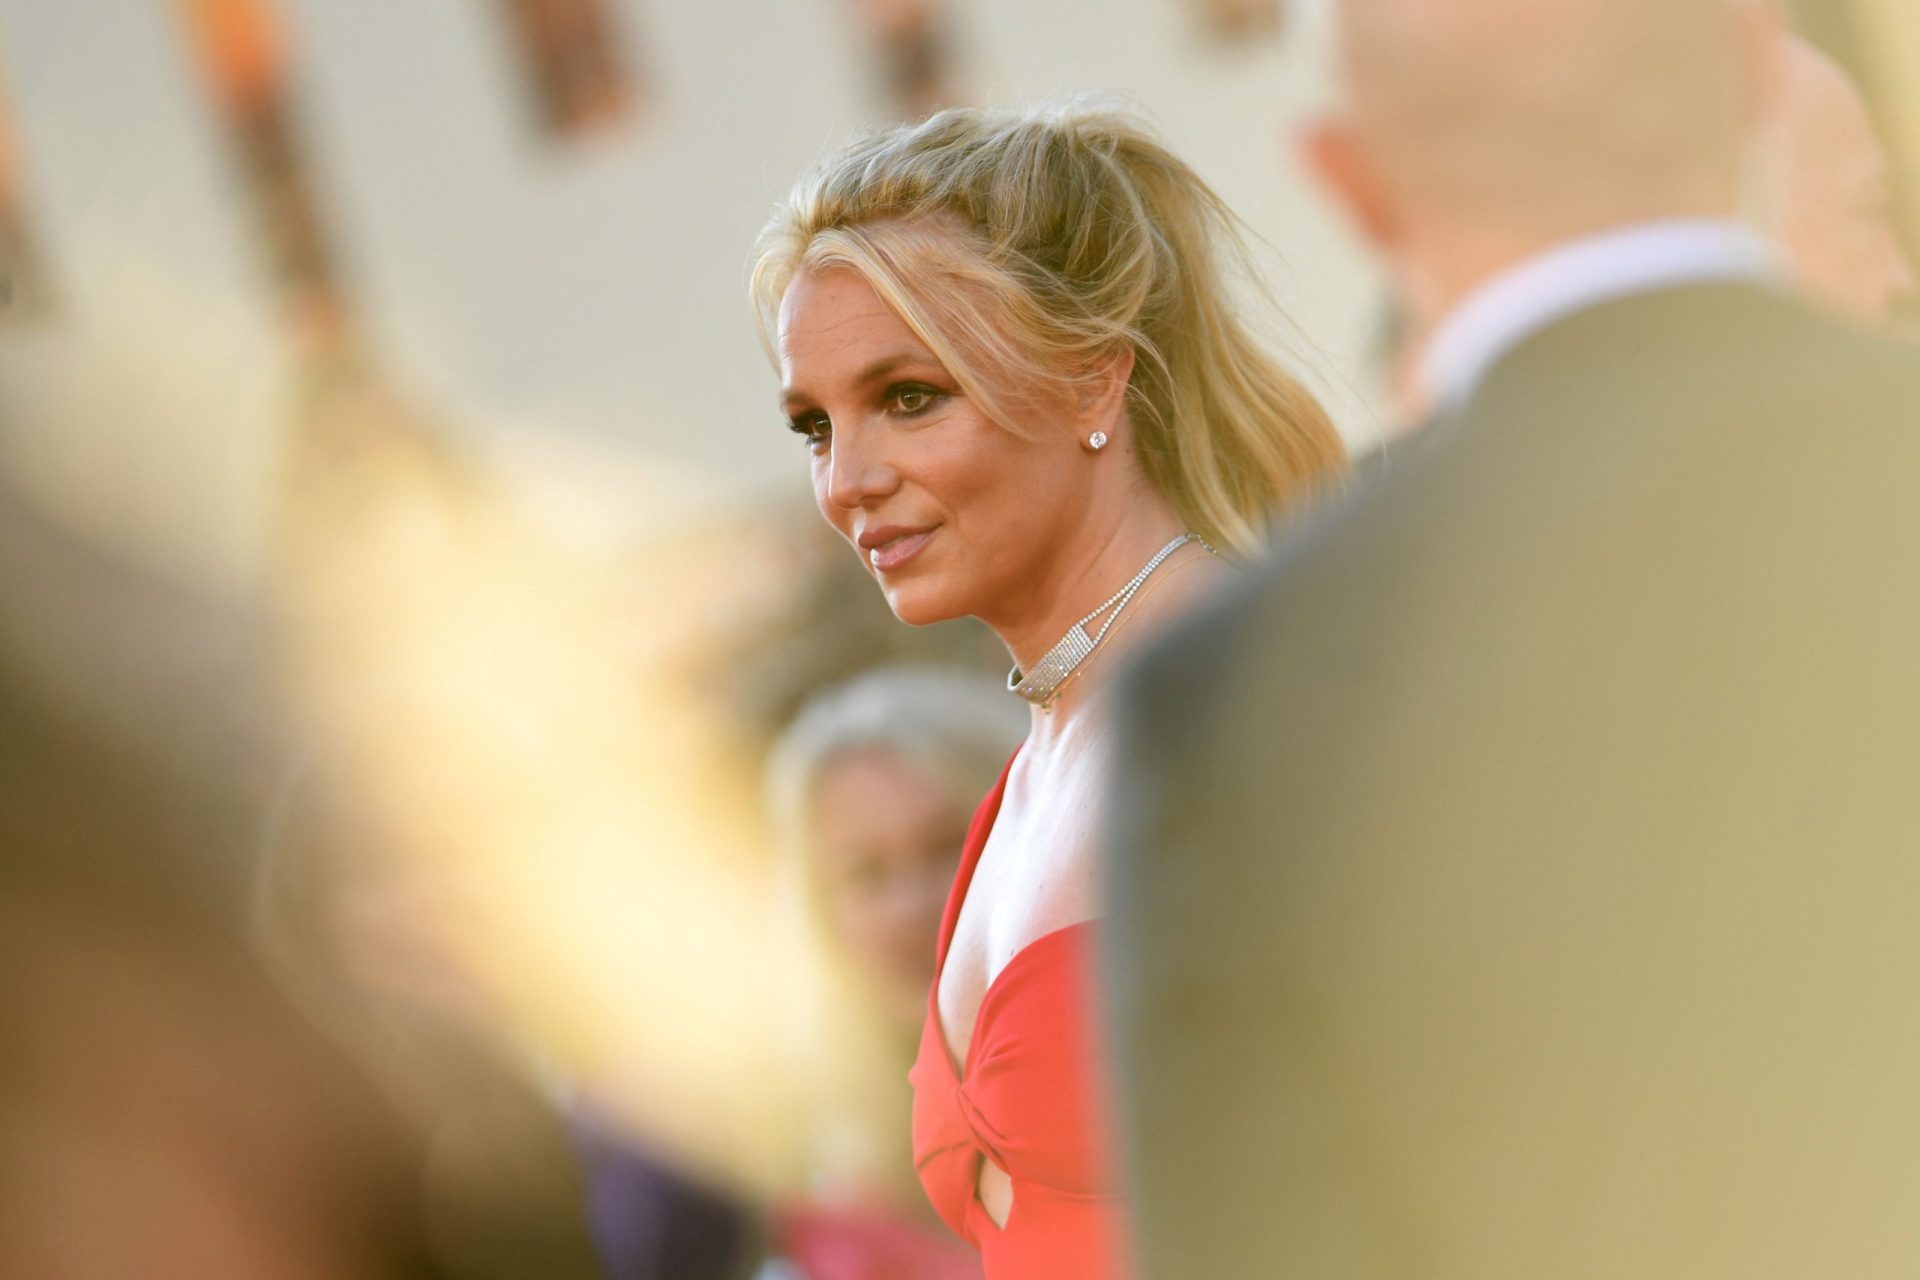 Professor despedido por cantar ‘Toxic’ de Britney Spears durante uma aula | Vídeo